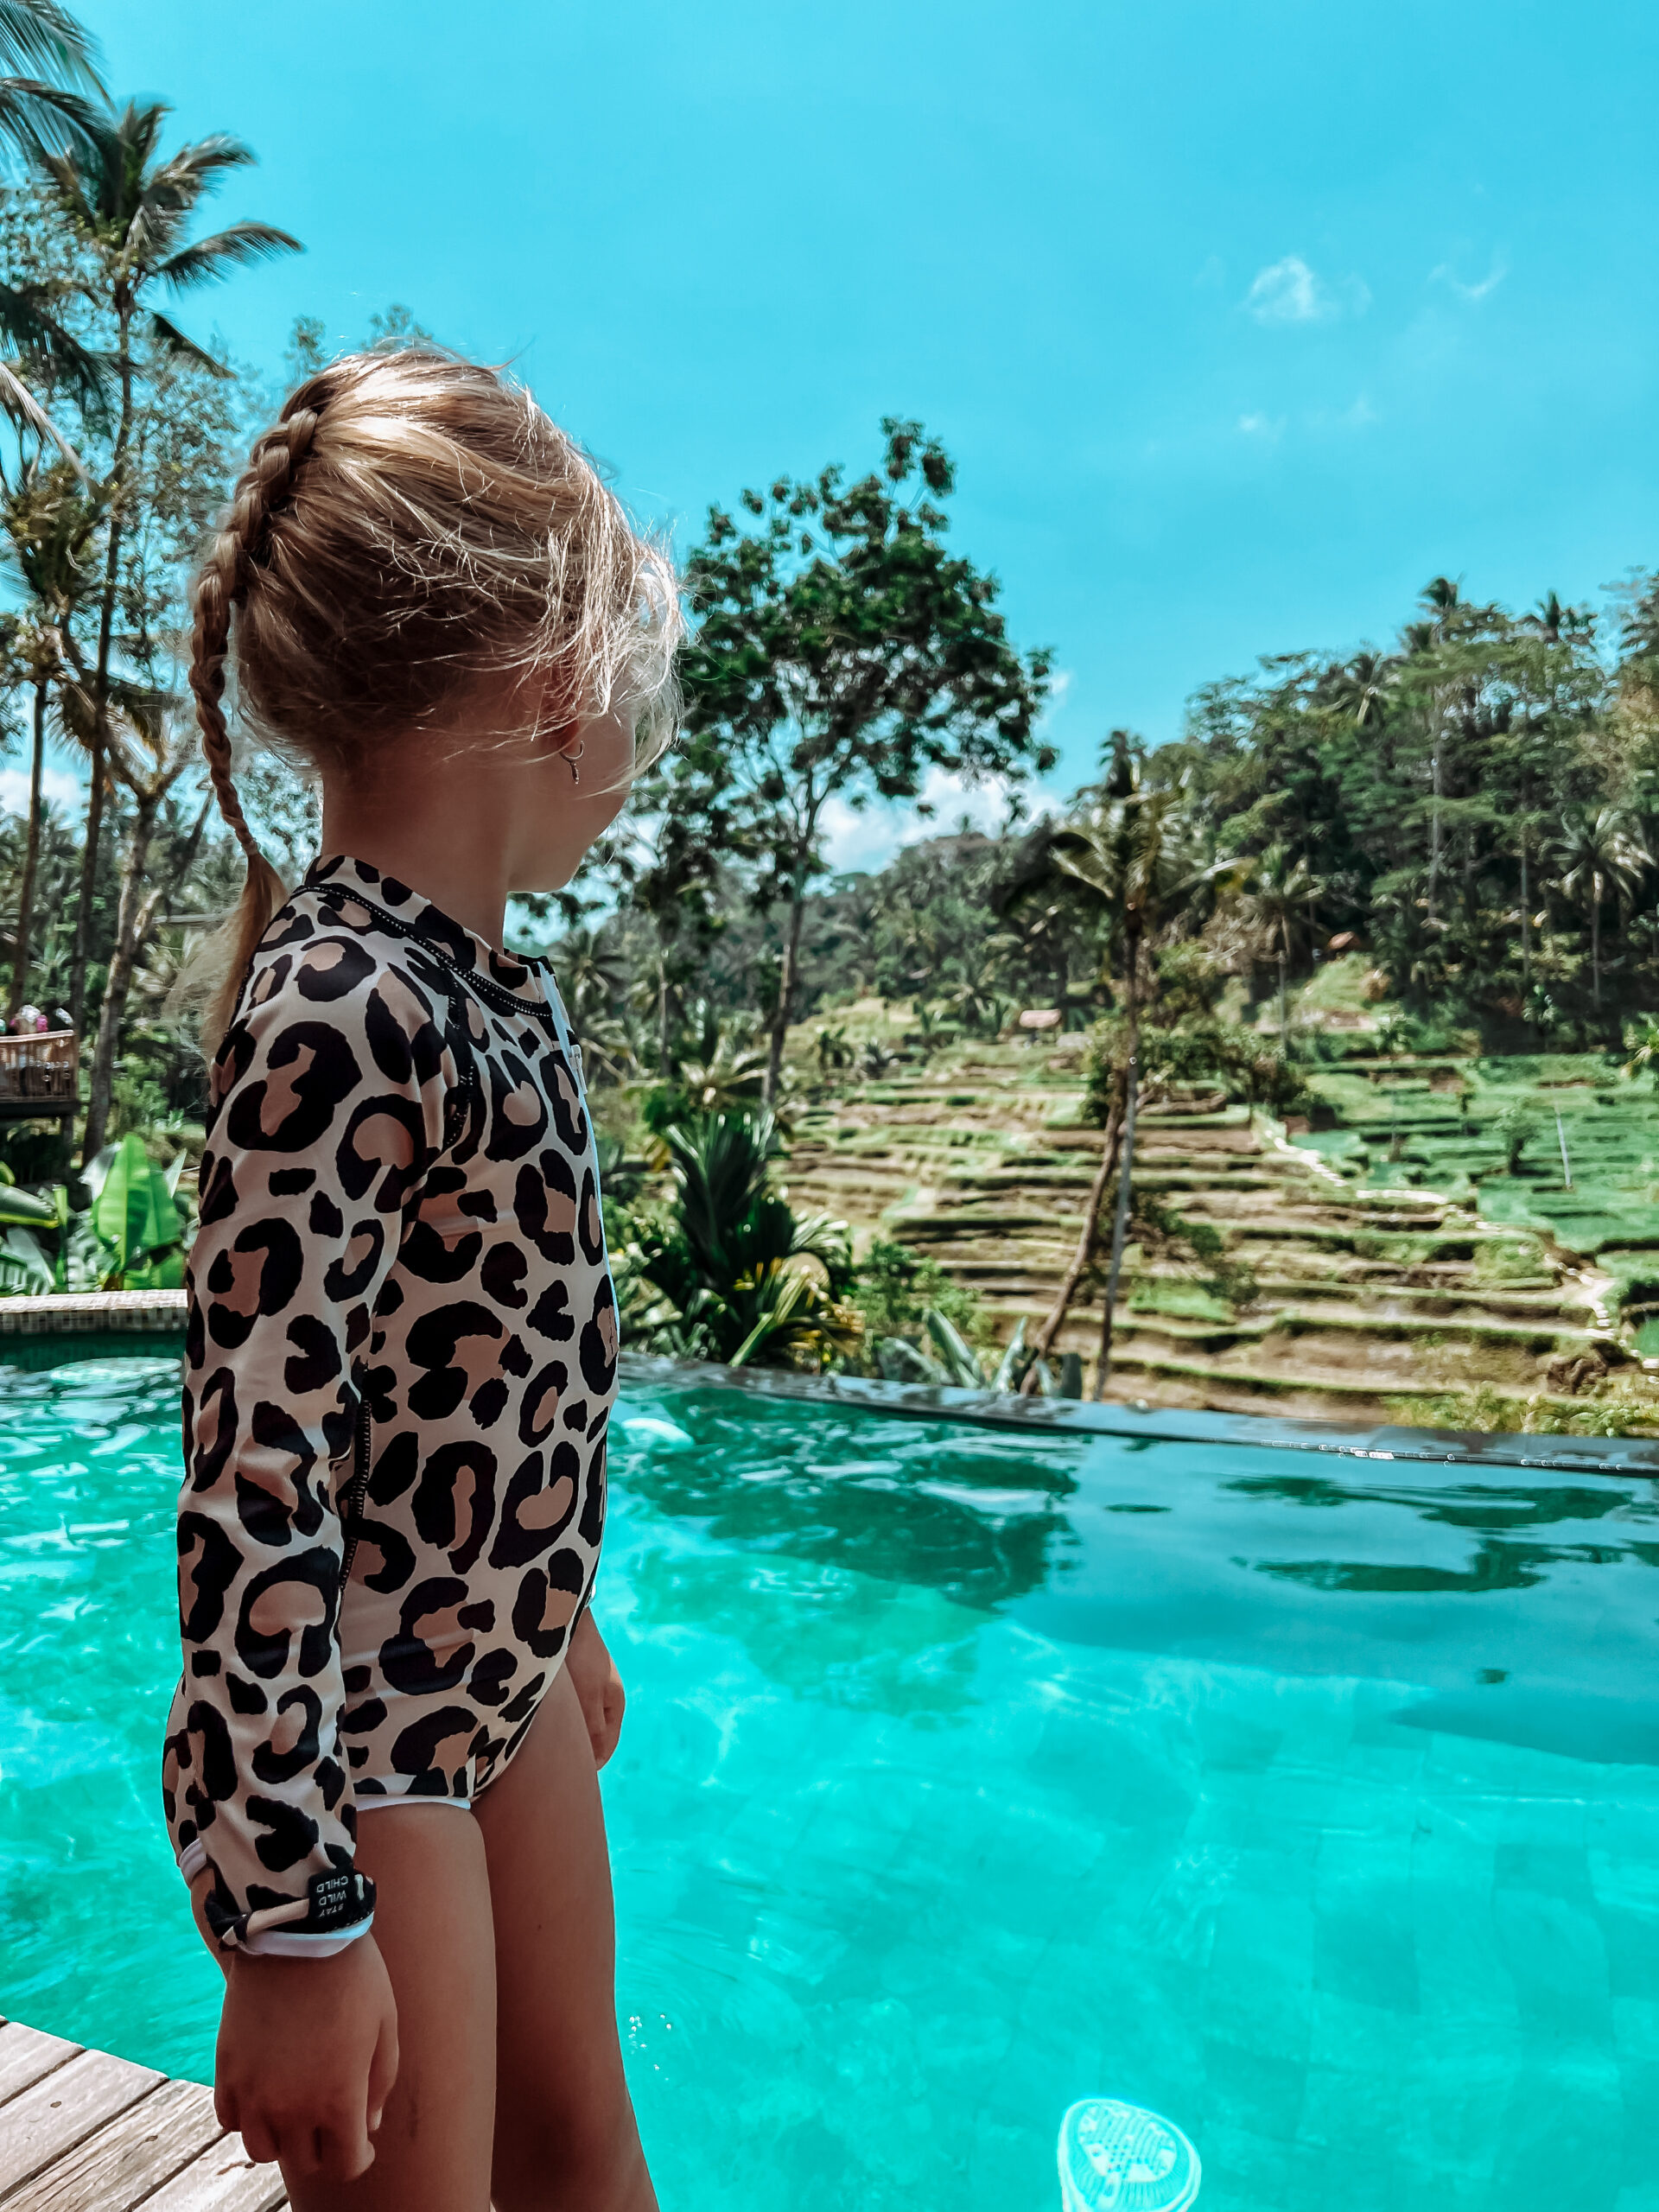 Rondreis Bali met kleine kinderen